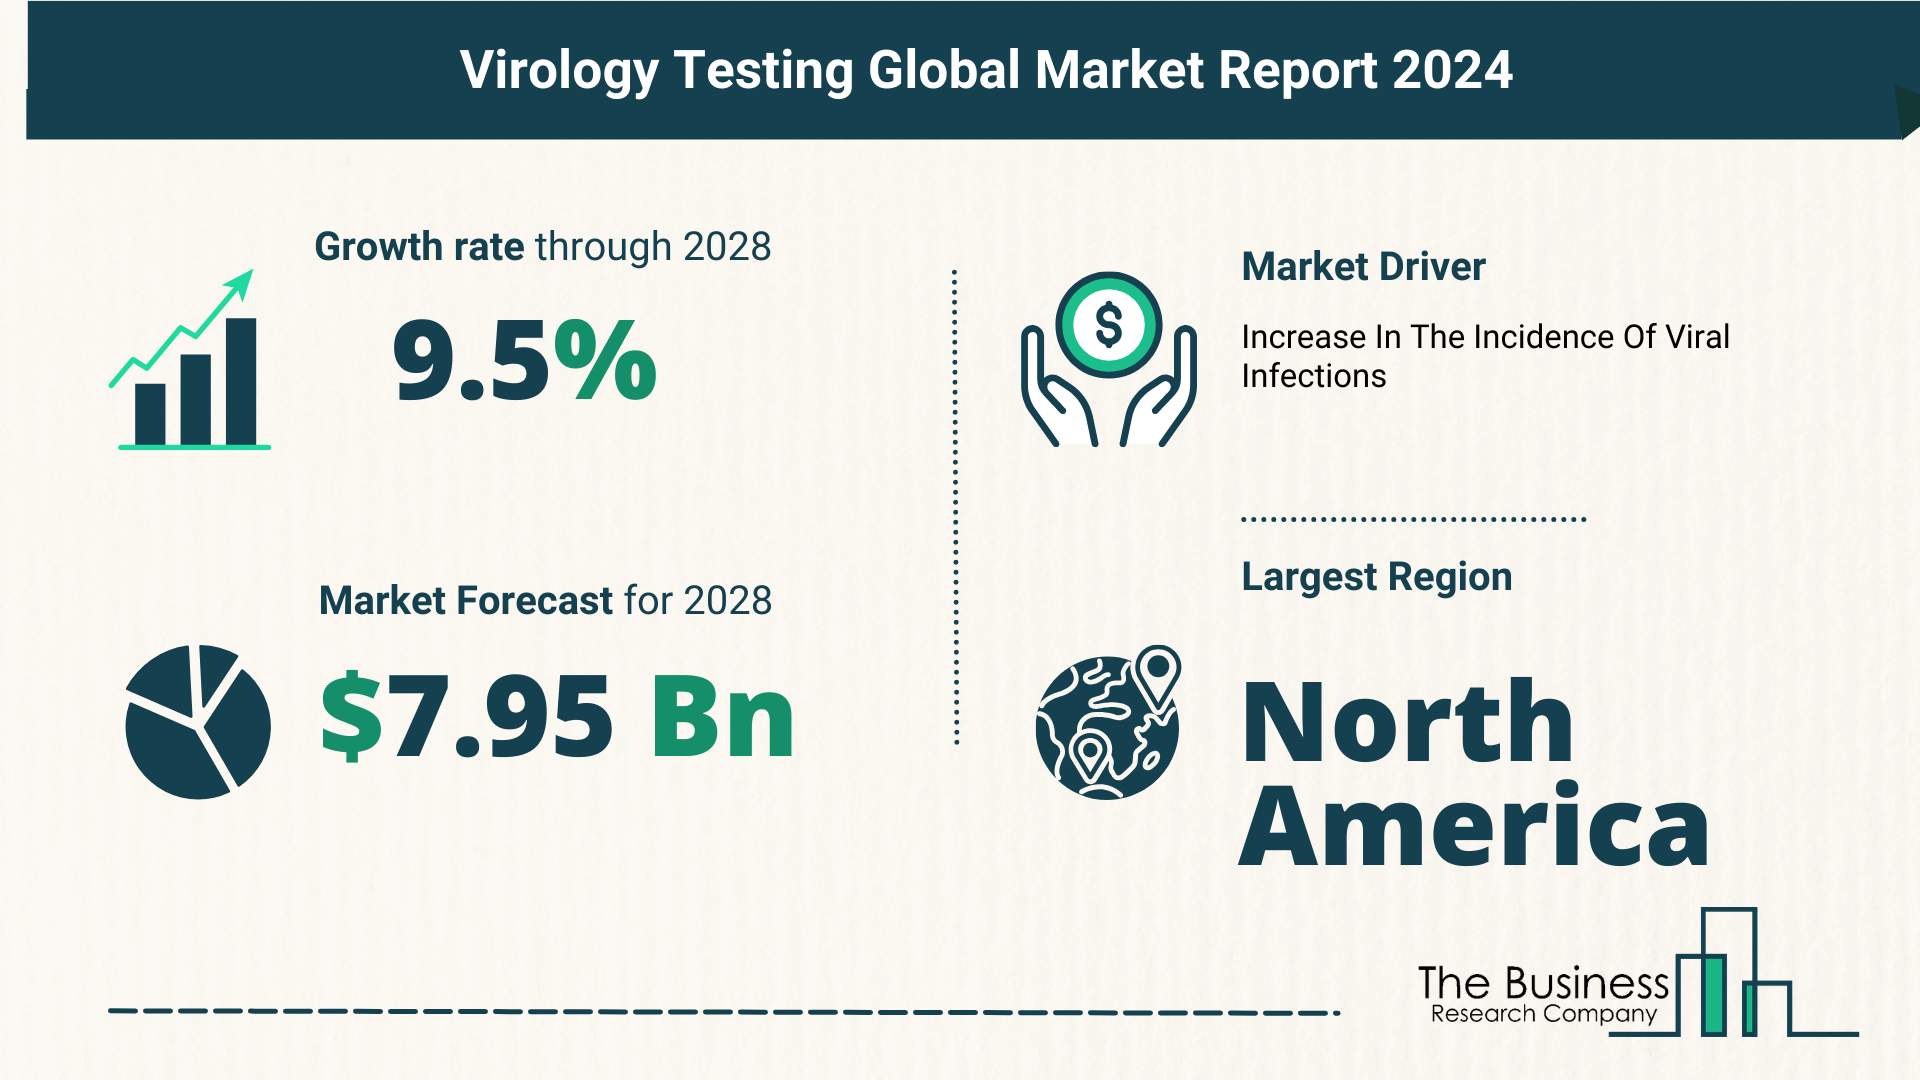 Global Virology Testing Market